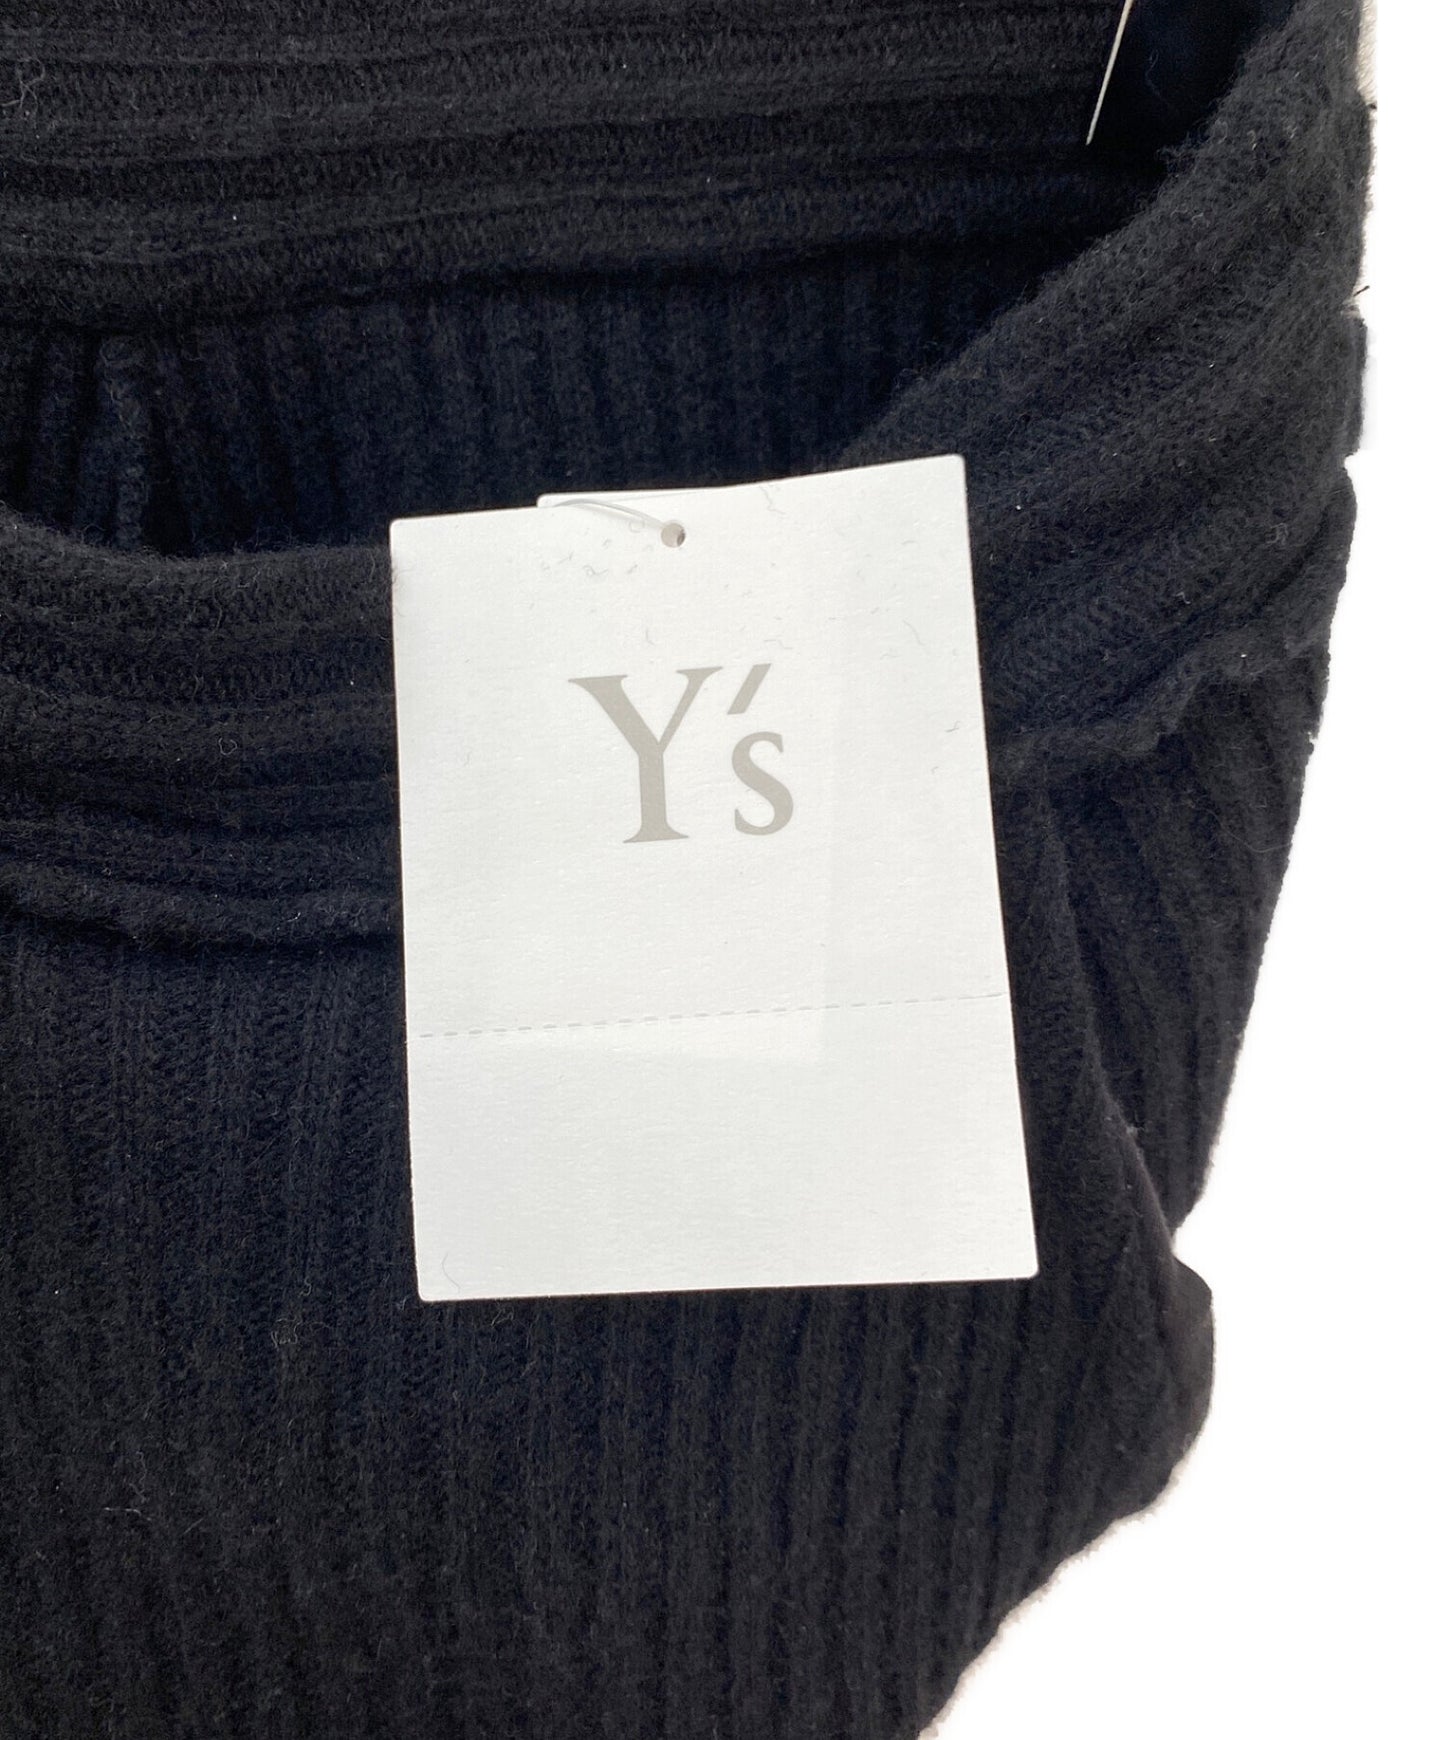 Y的羊毛尼龍不平坦的腰繩褲/針織褲/肋骨褲子YE-T09-161-2